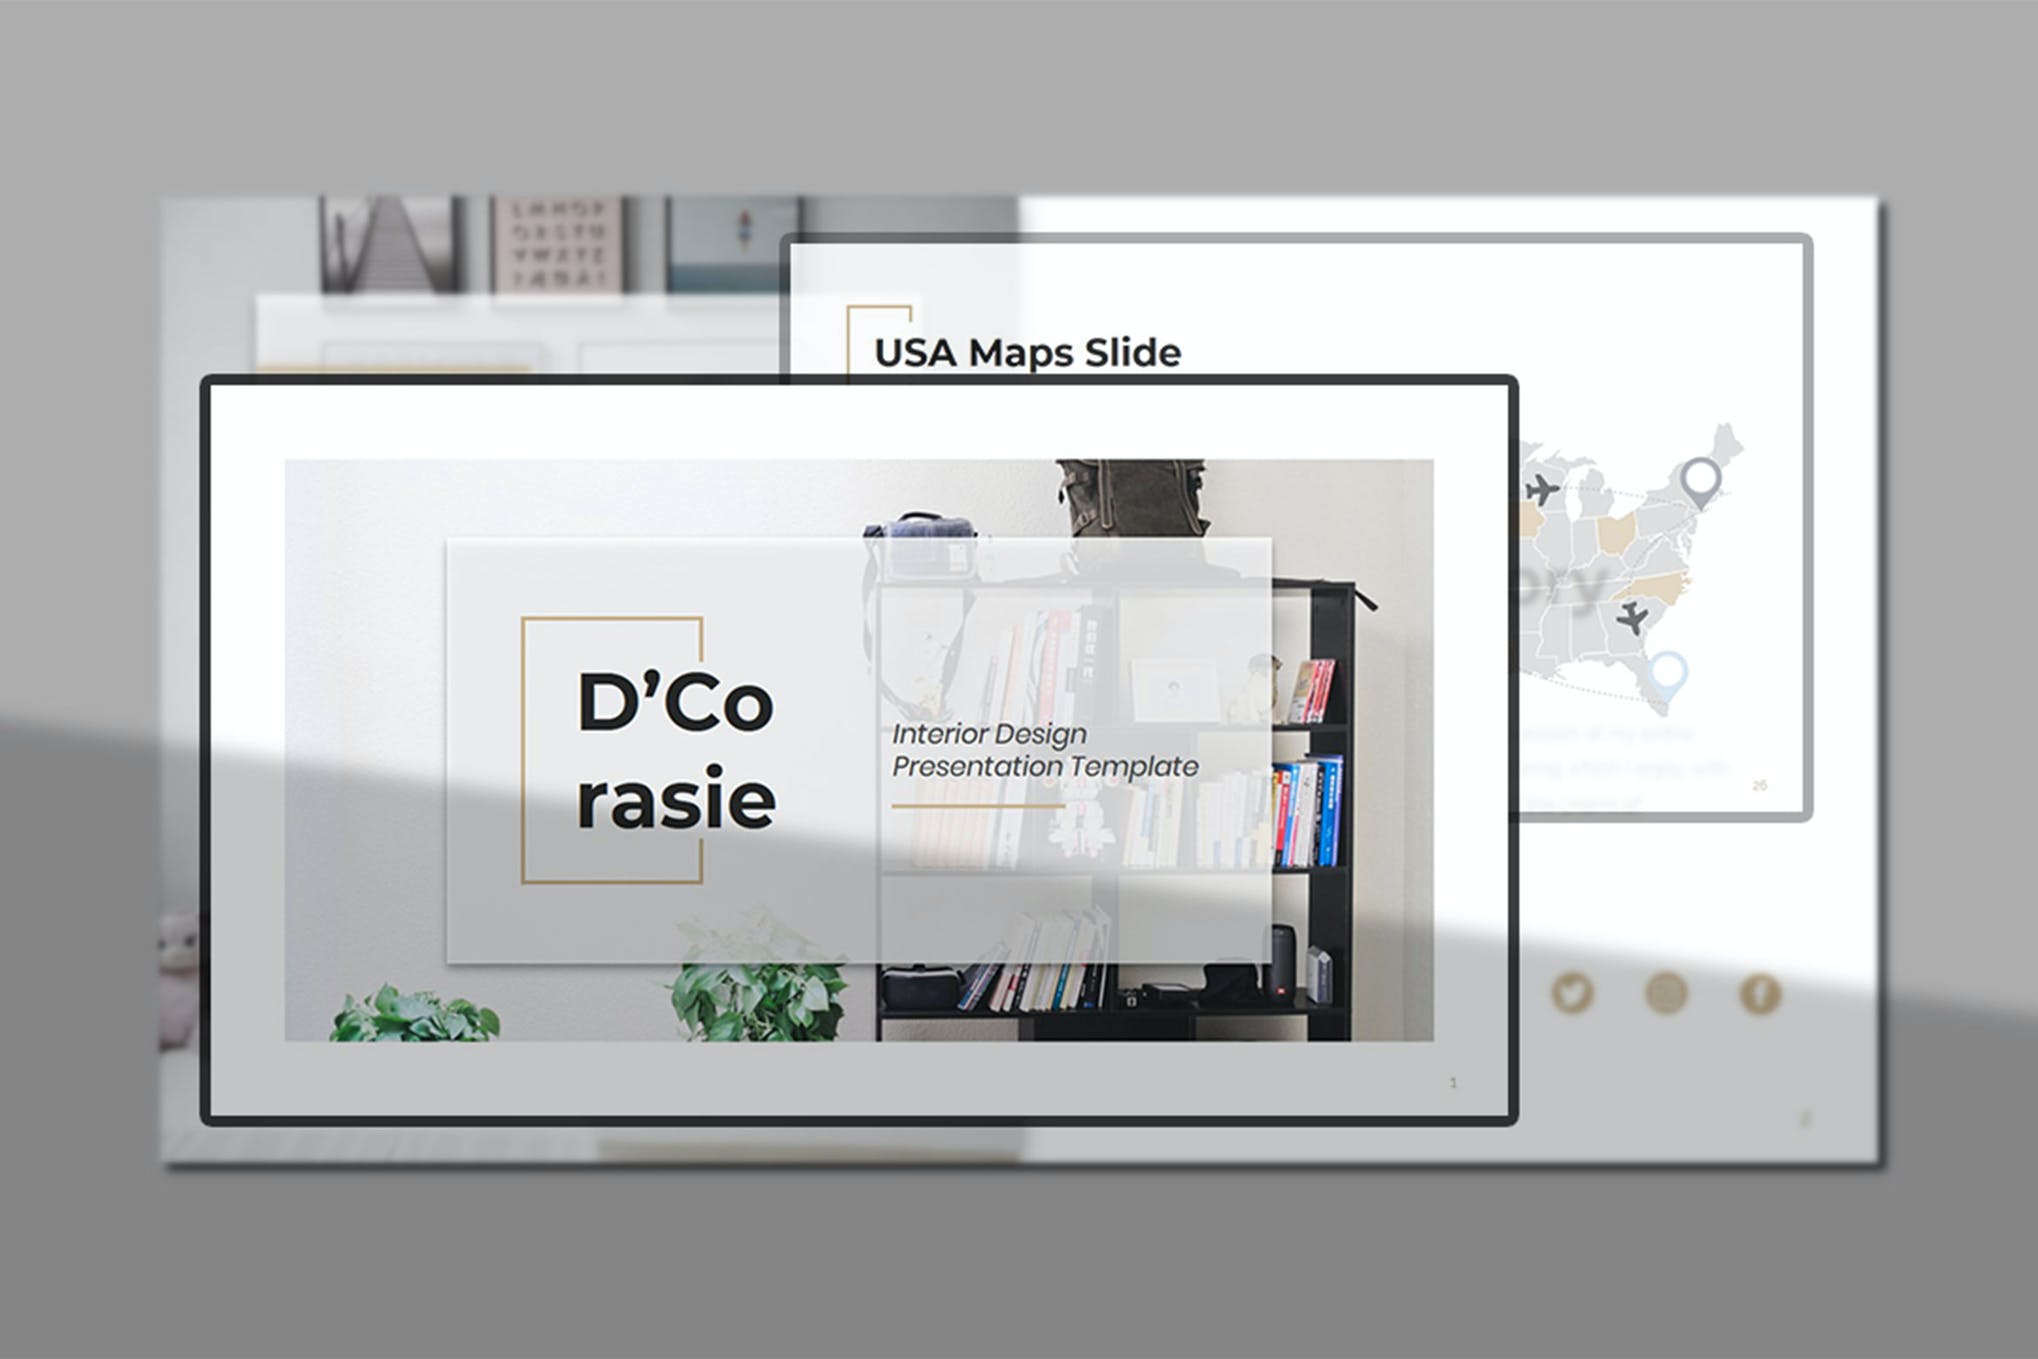 D'Corasie – Interior Design PowerPoint Template